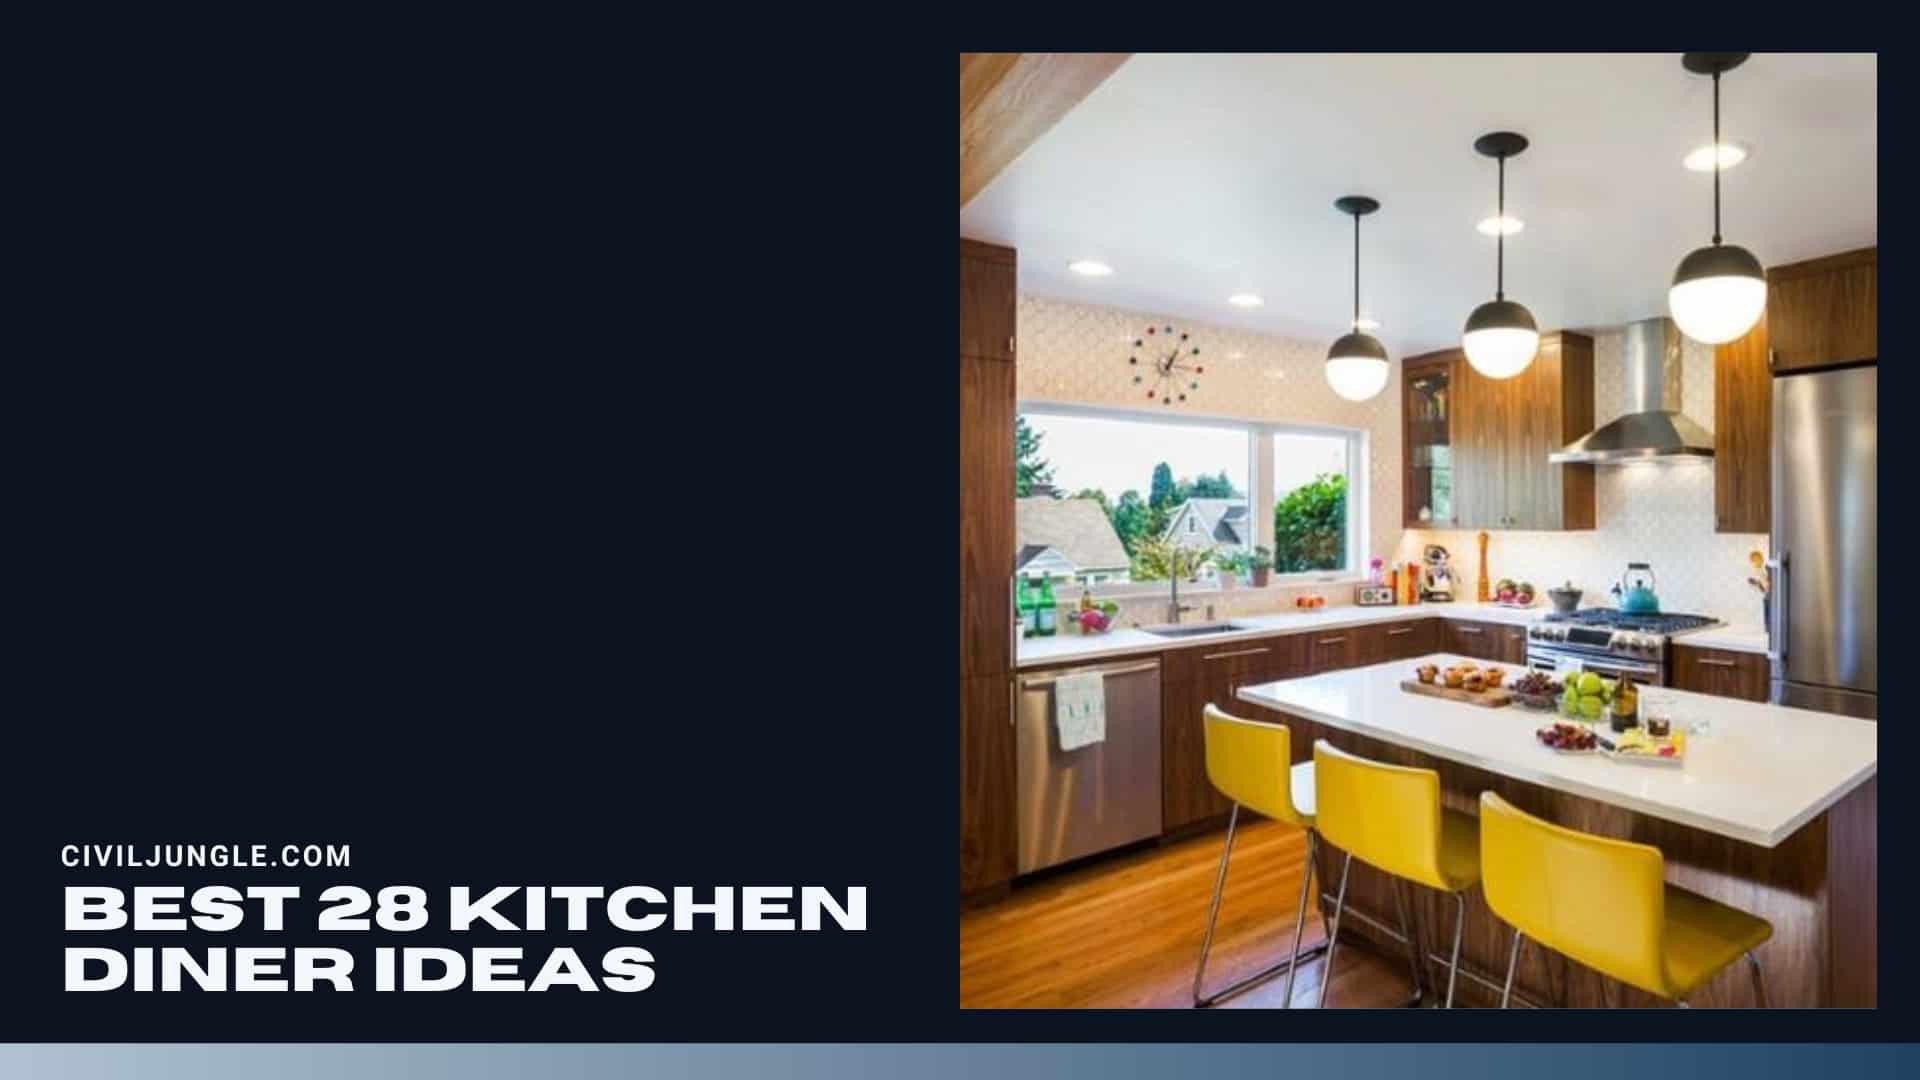 Best 28 Kitchen Diner Ideas